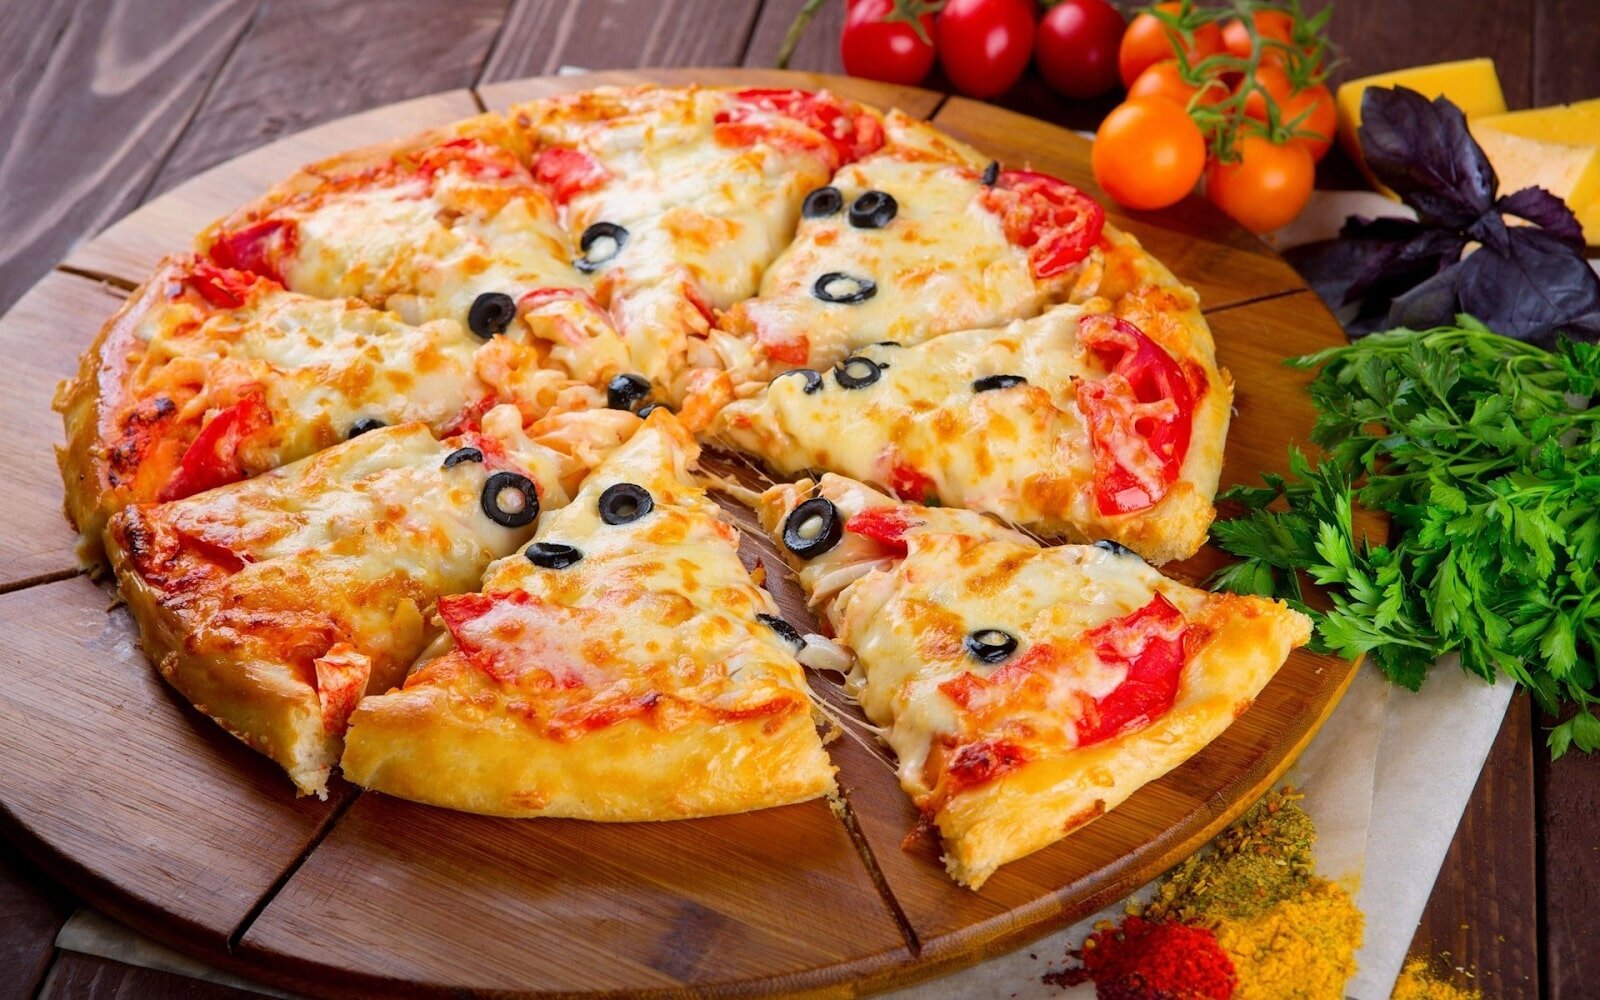 Hình ảnh minh họa một chiếc bánh pizza